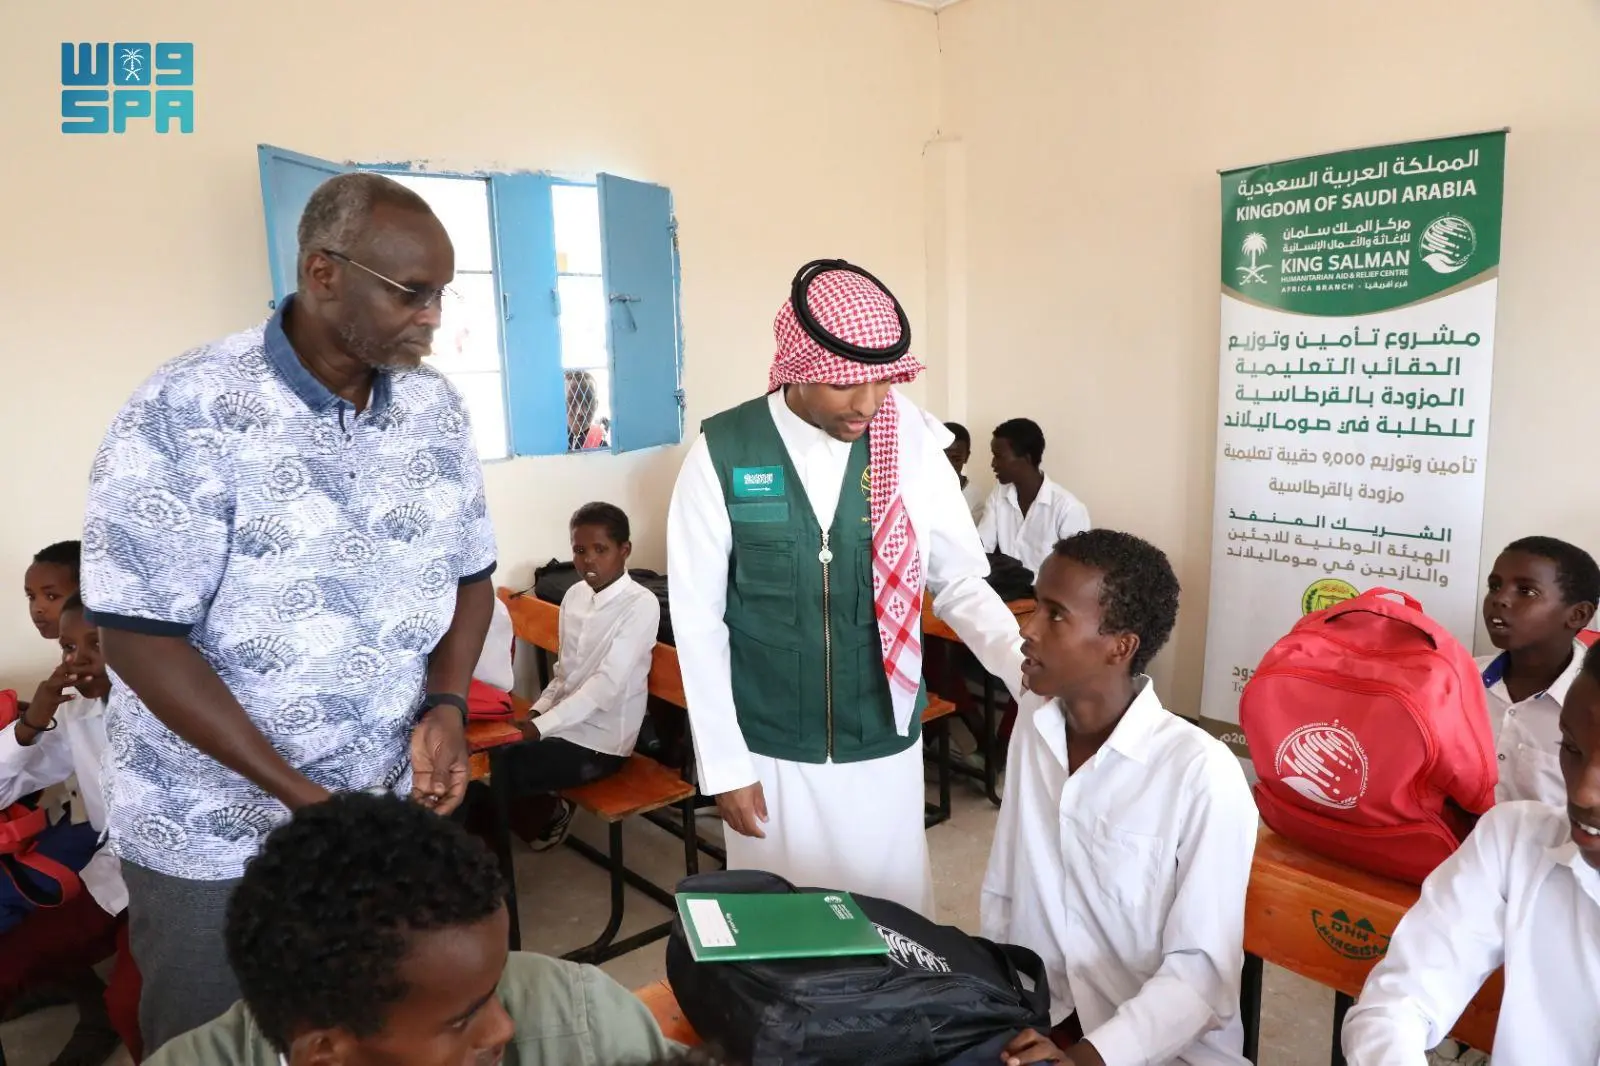 مركز الملك سلمان للإغاثة يوزع 1,000 حقيبة مدرسية في إقليم توجدير بالصومال